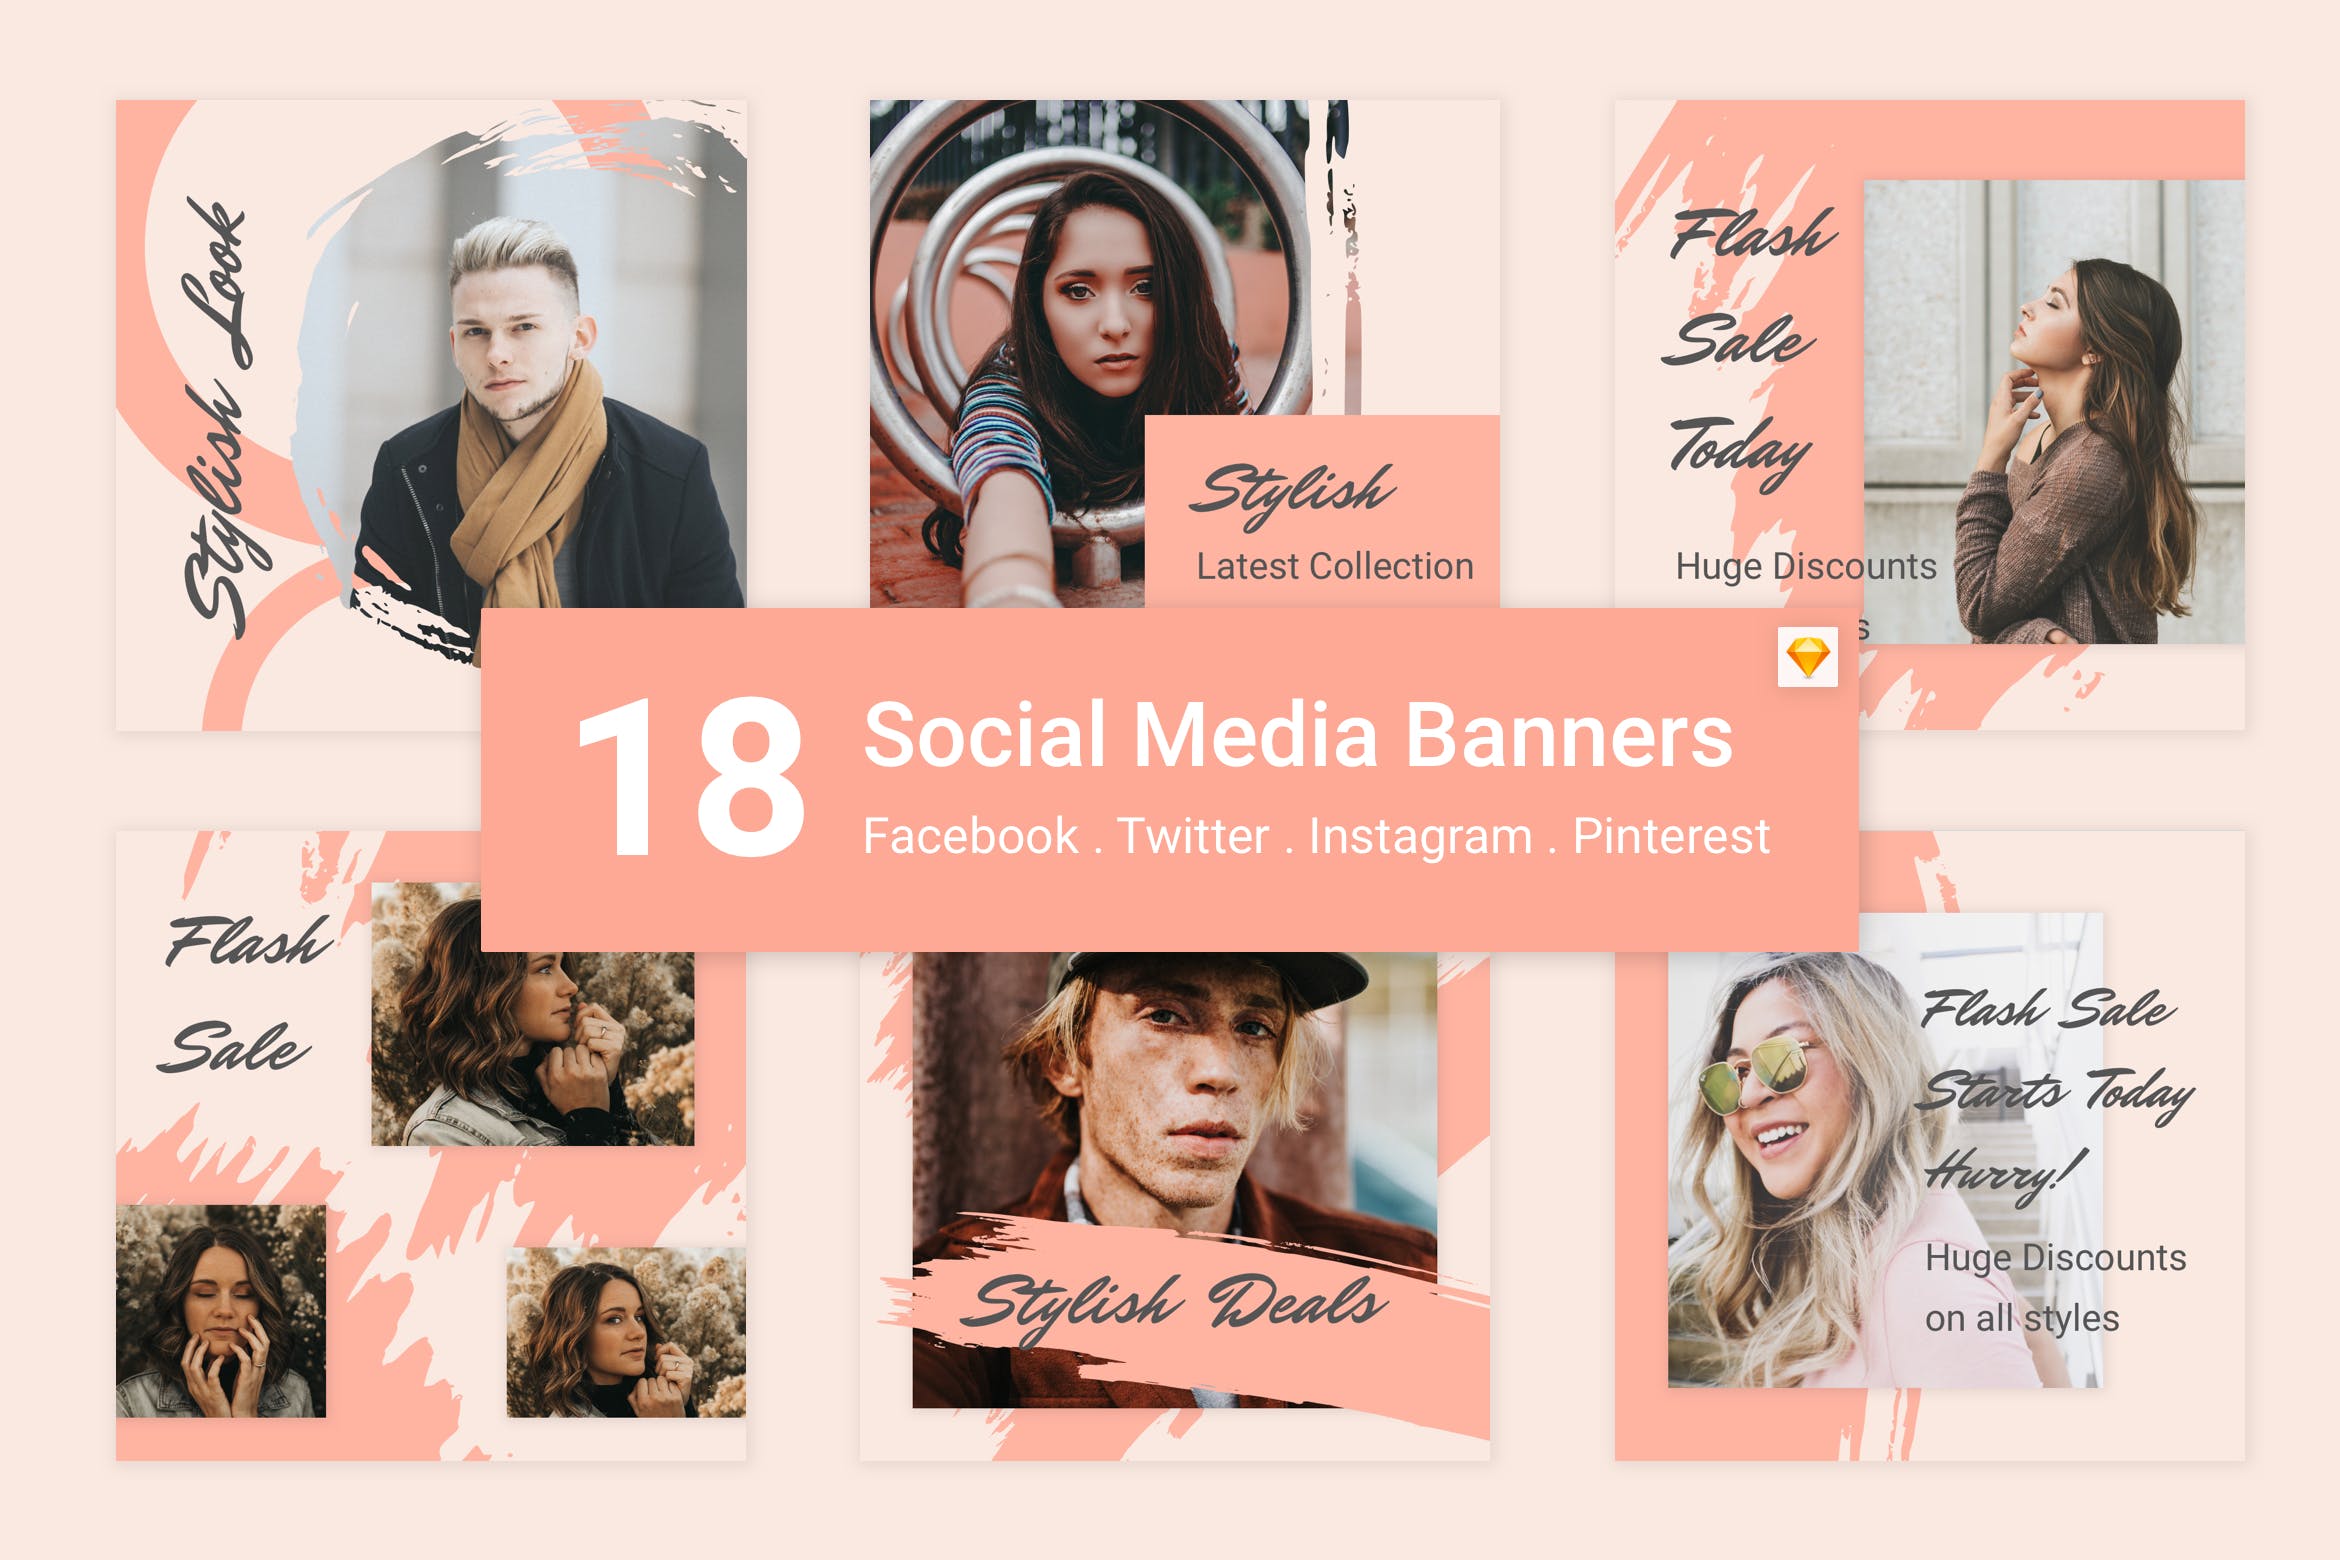 18款社交自媒体广告Banner设计模板套装v7[SKETCH] 18 Social Media Banners Kit (Vol. 7) for Sketch插图